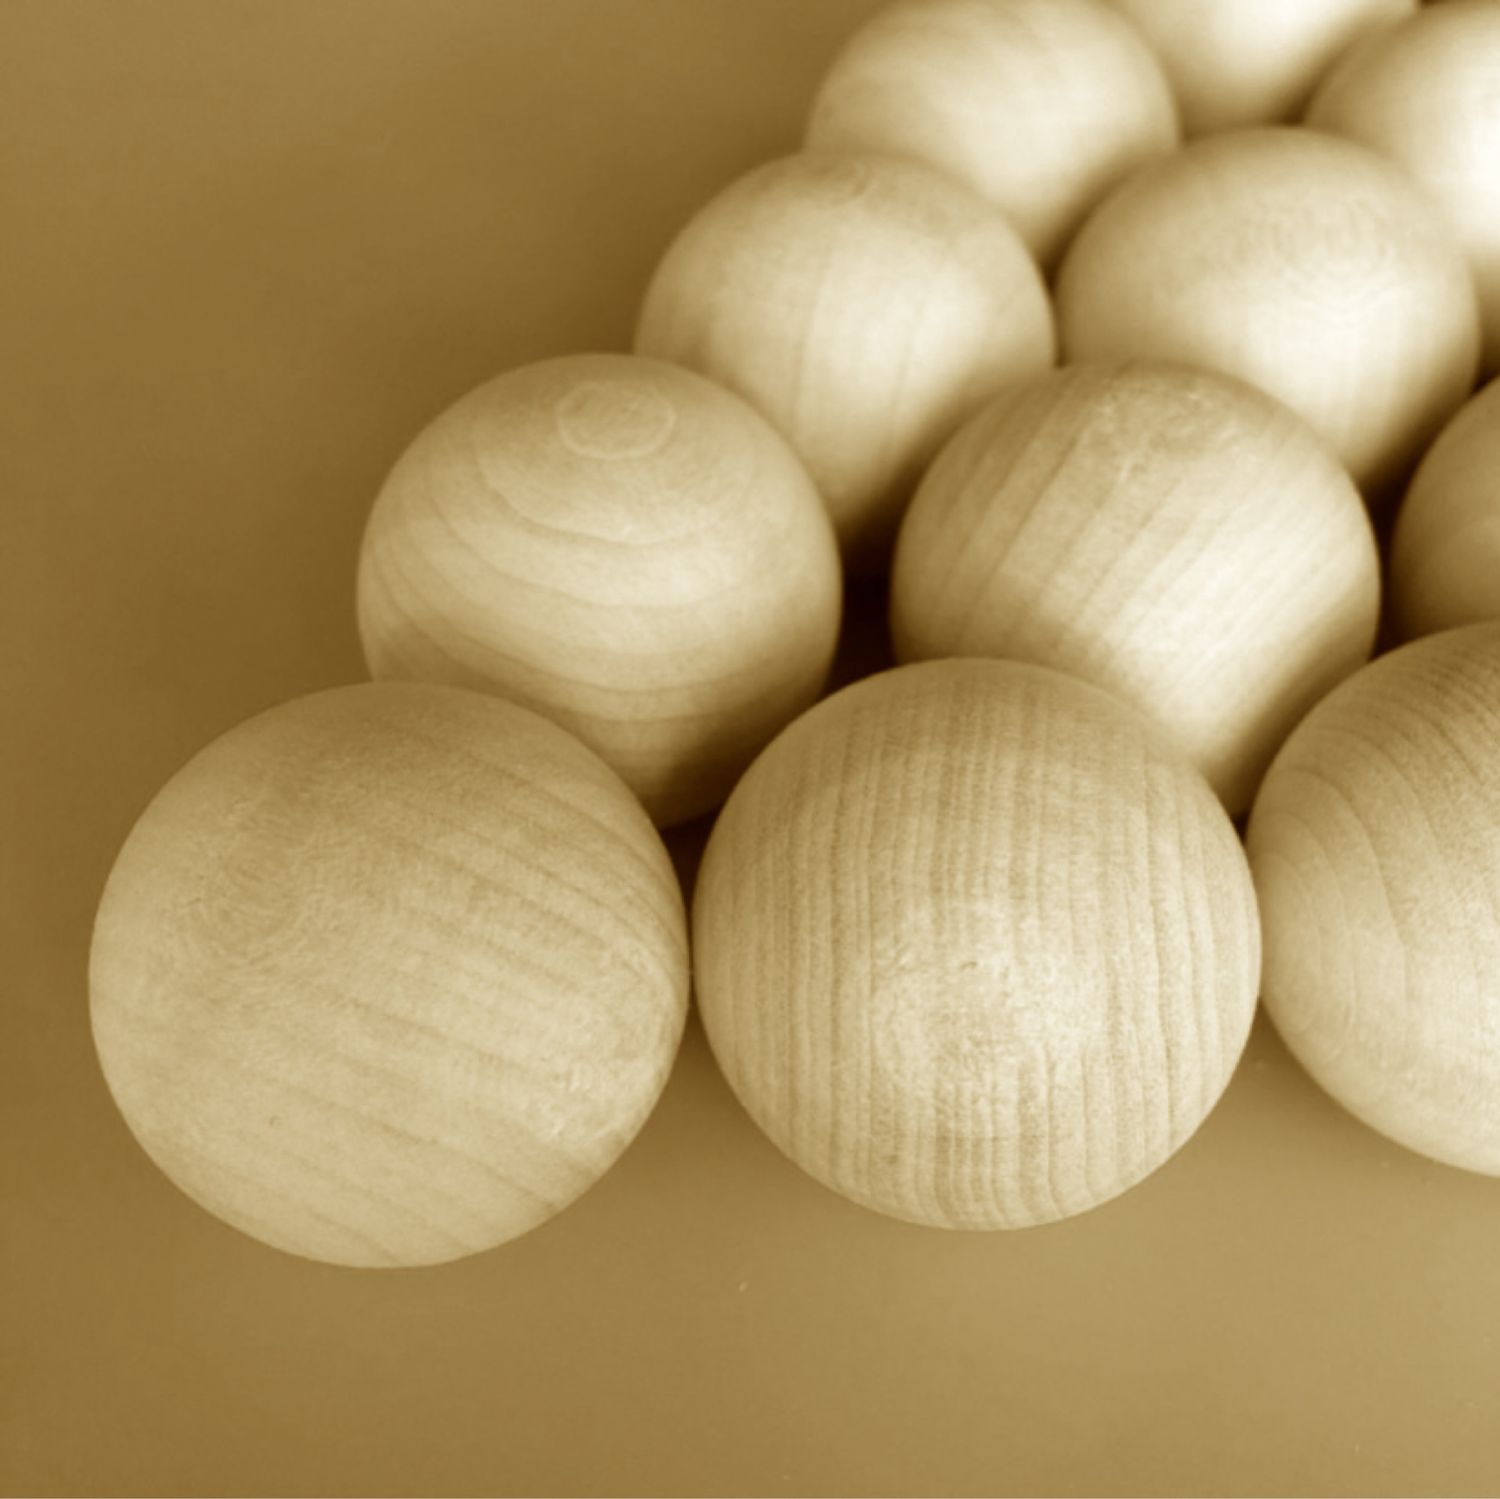 Большие деревянные шары